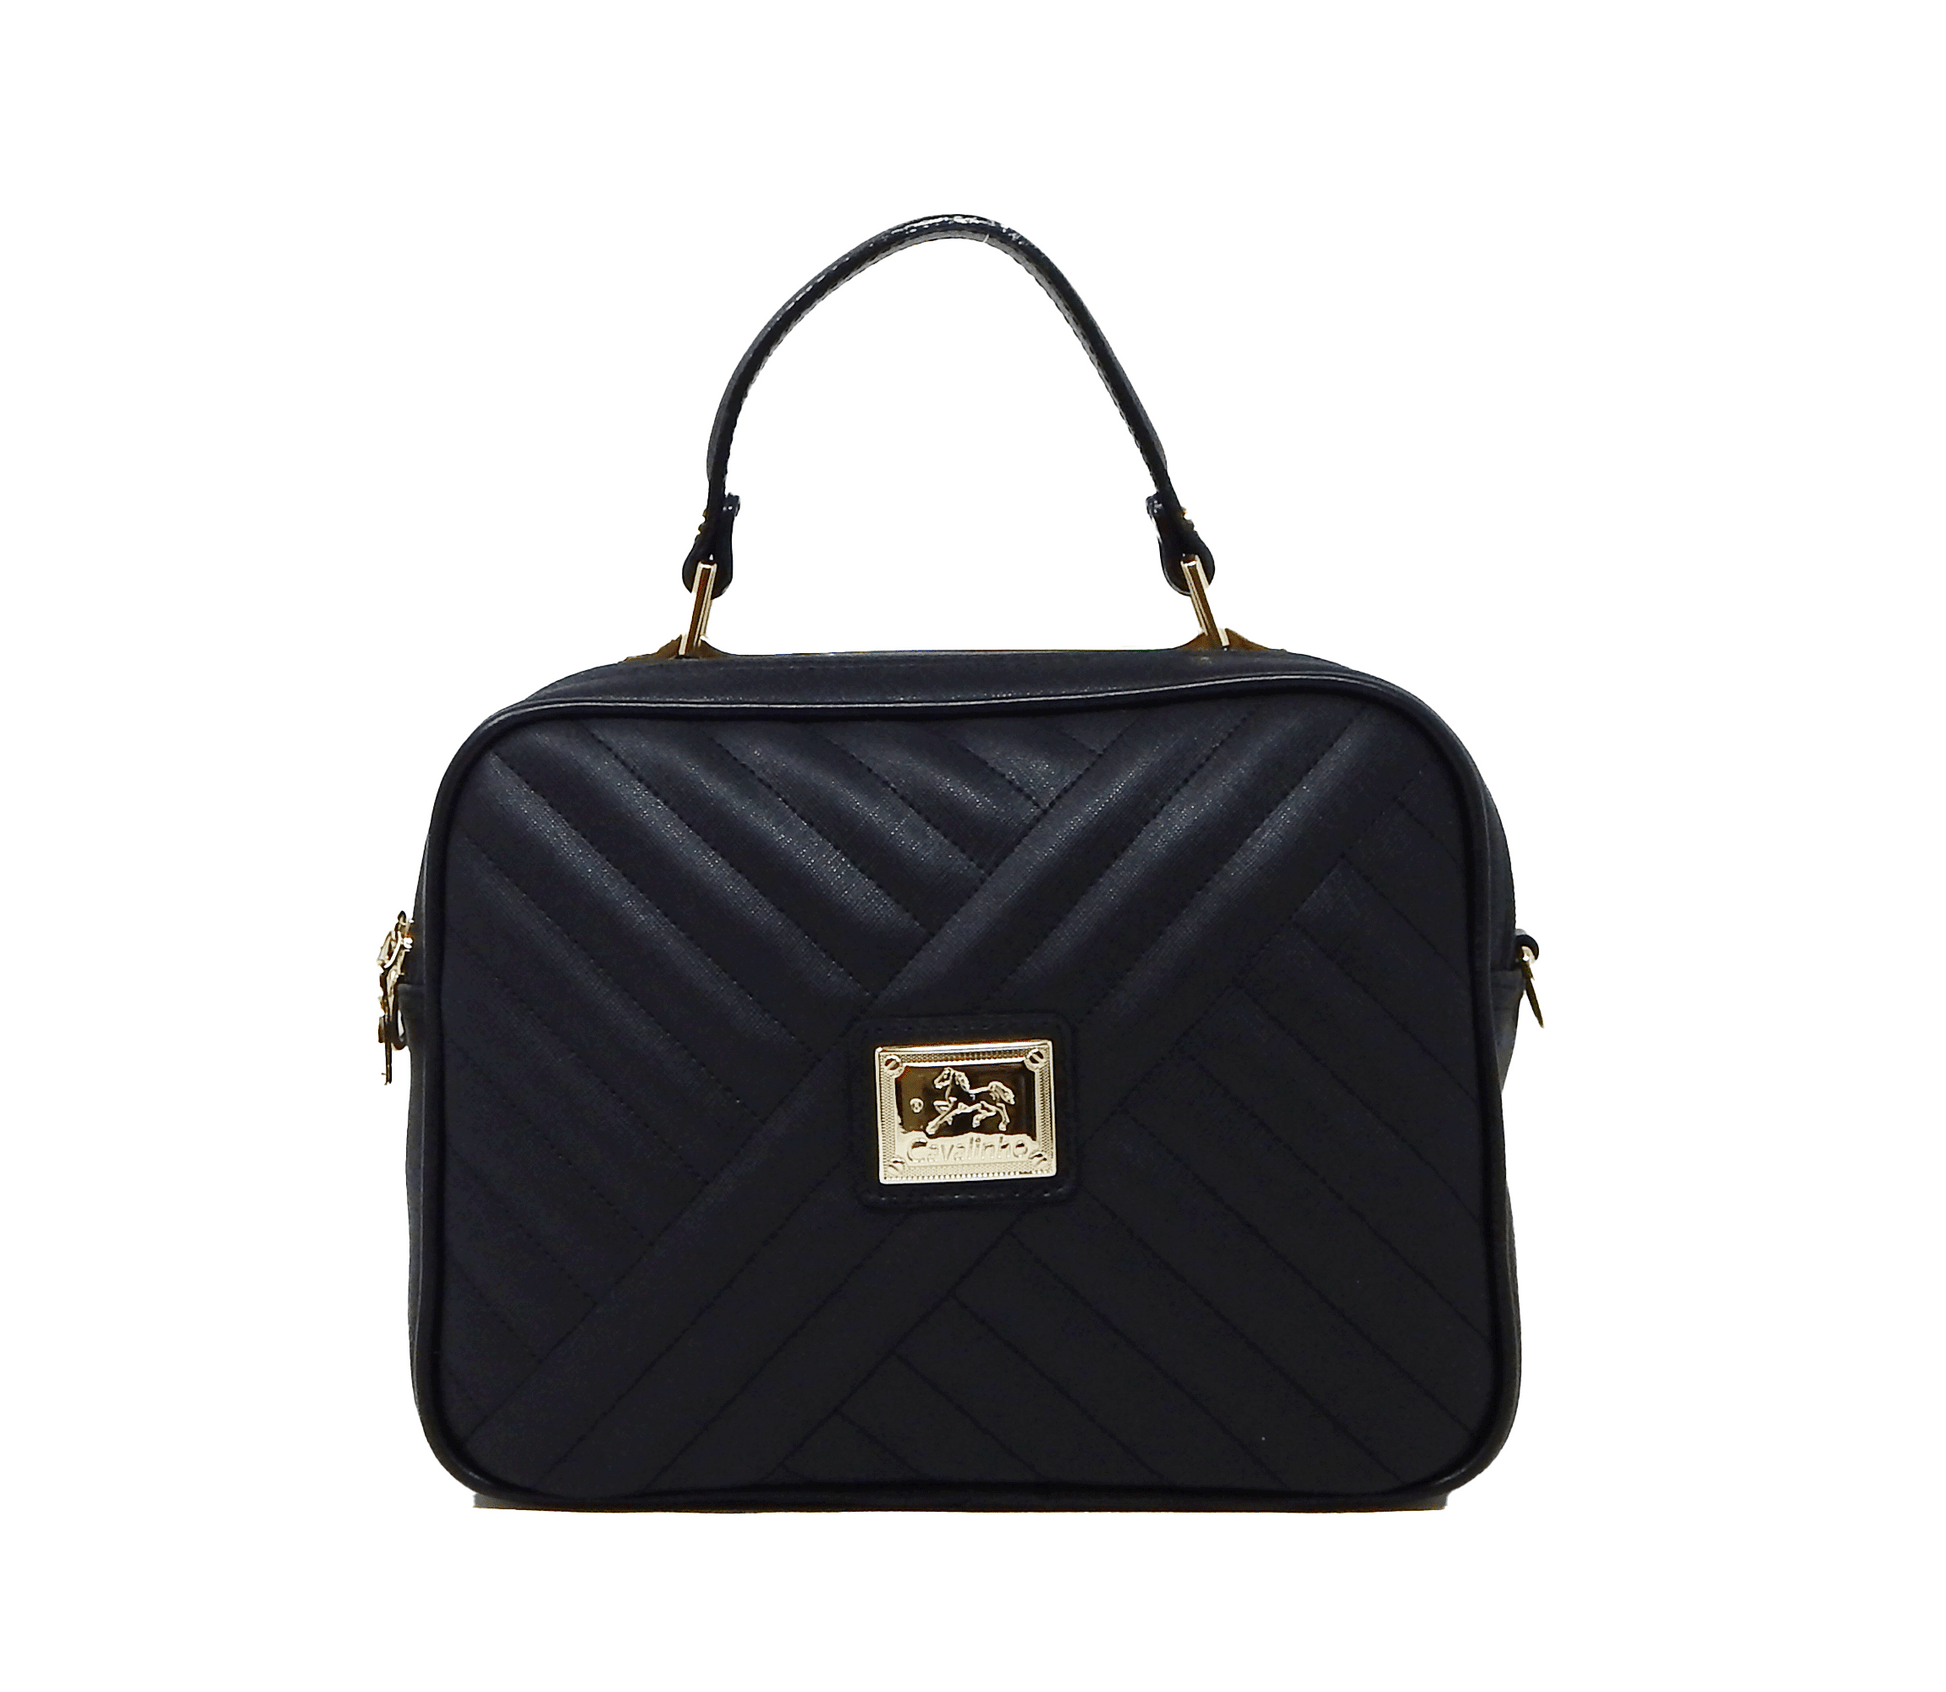 #color_ Black | Cavalinho Charming Handbag - Black - 18470186.01_1